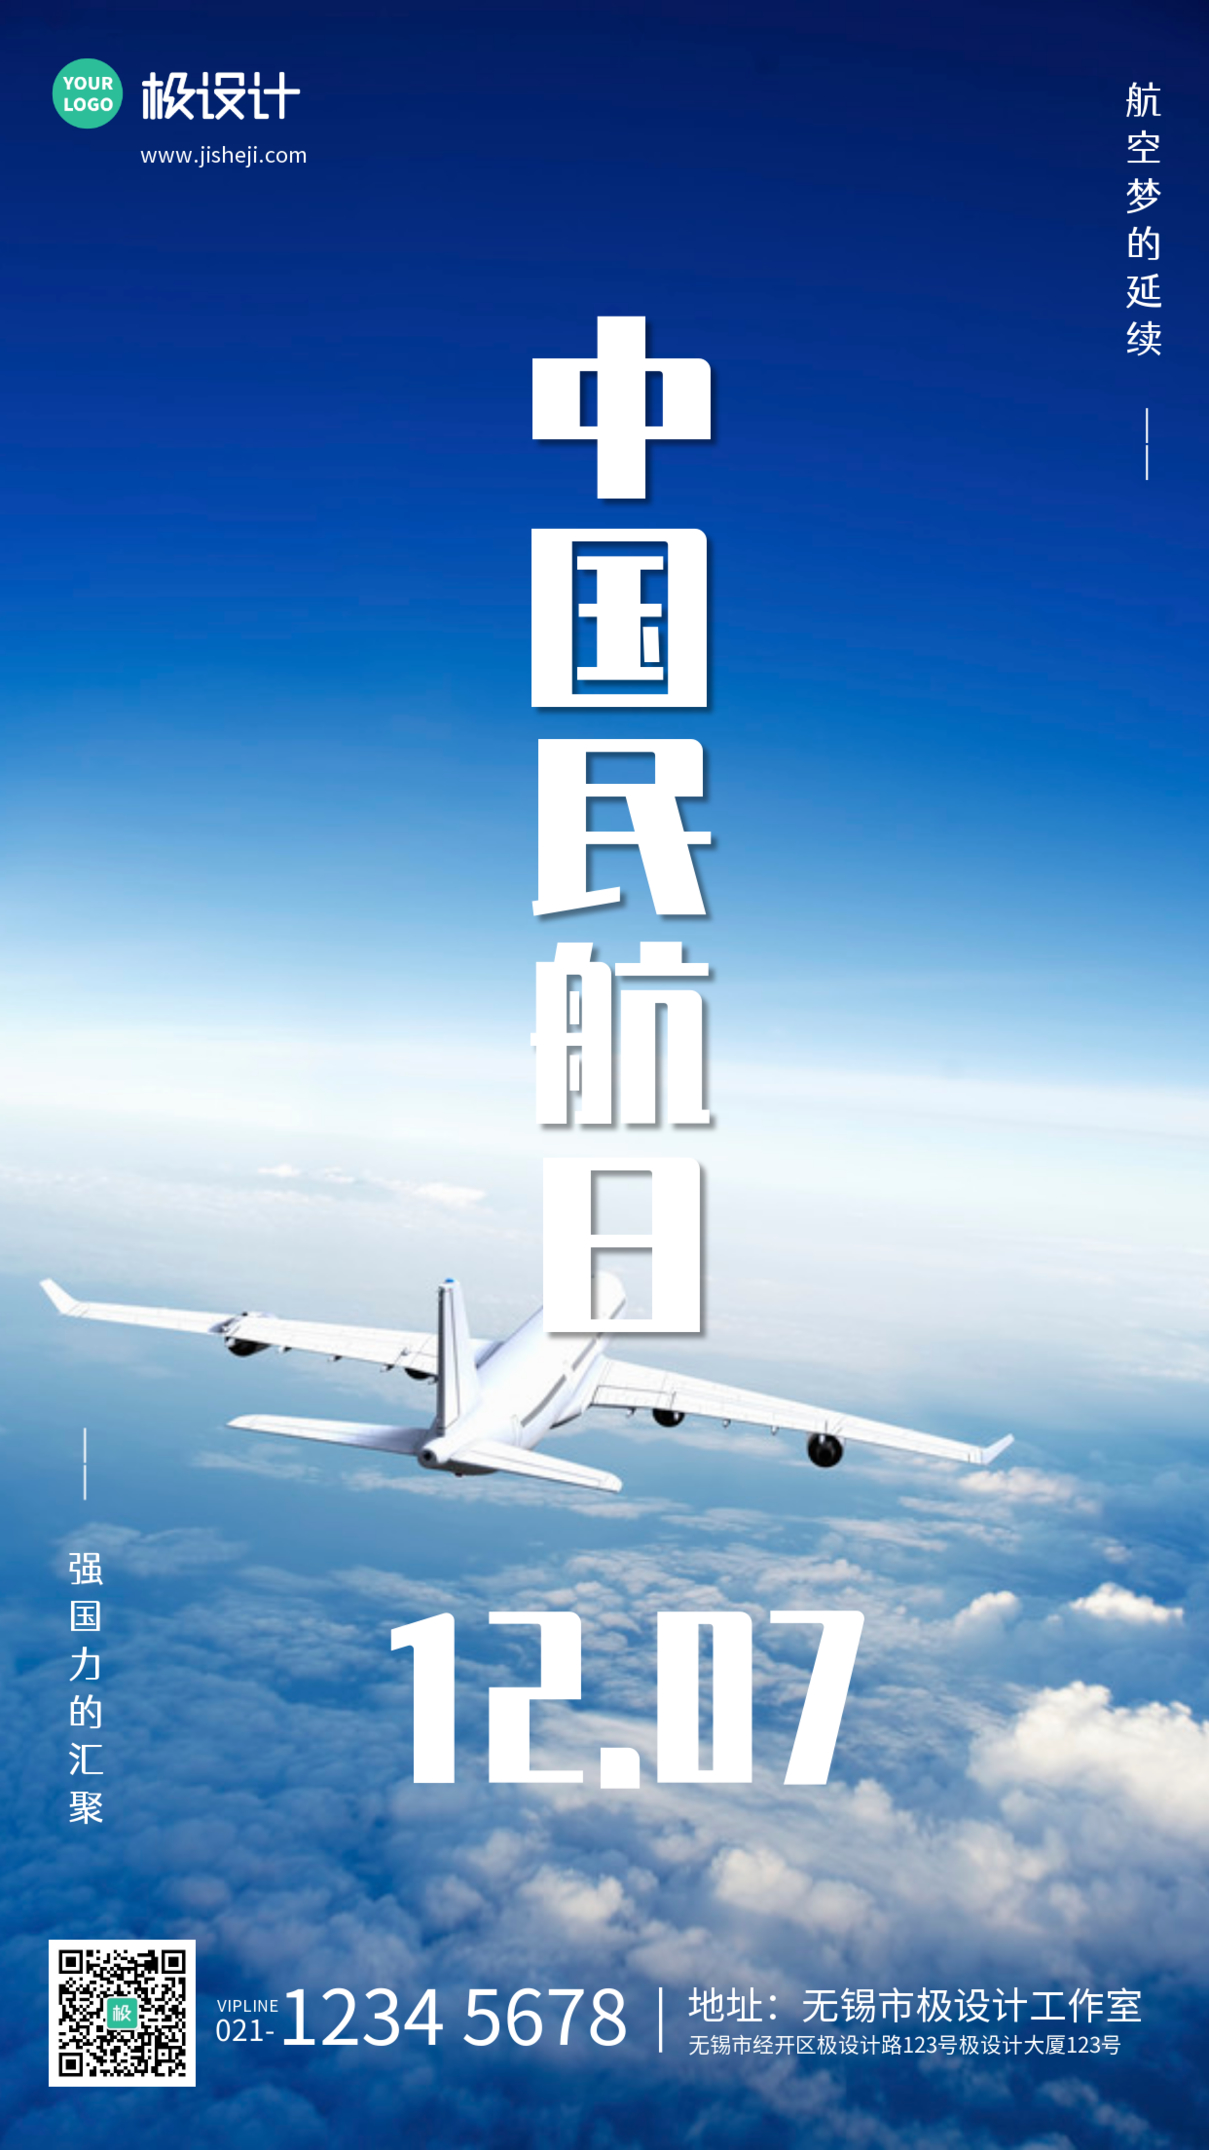 摄影图海报小节日中国民航日手机宣传海报